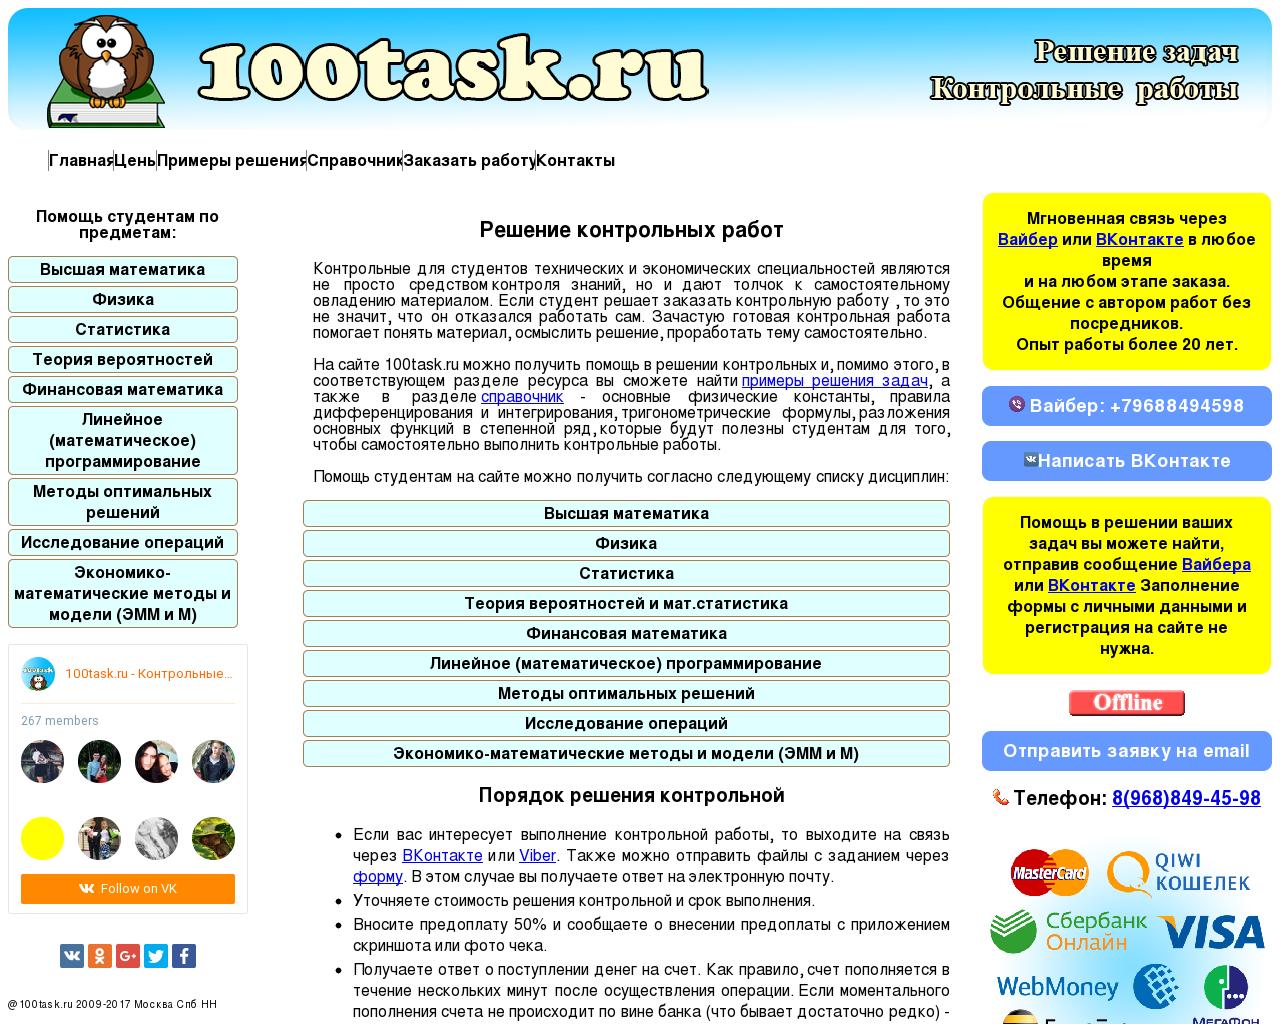 Изображение сайта 100task.ru в разрешении 1280x1024